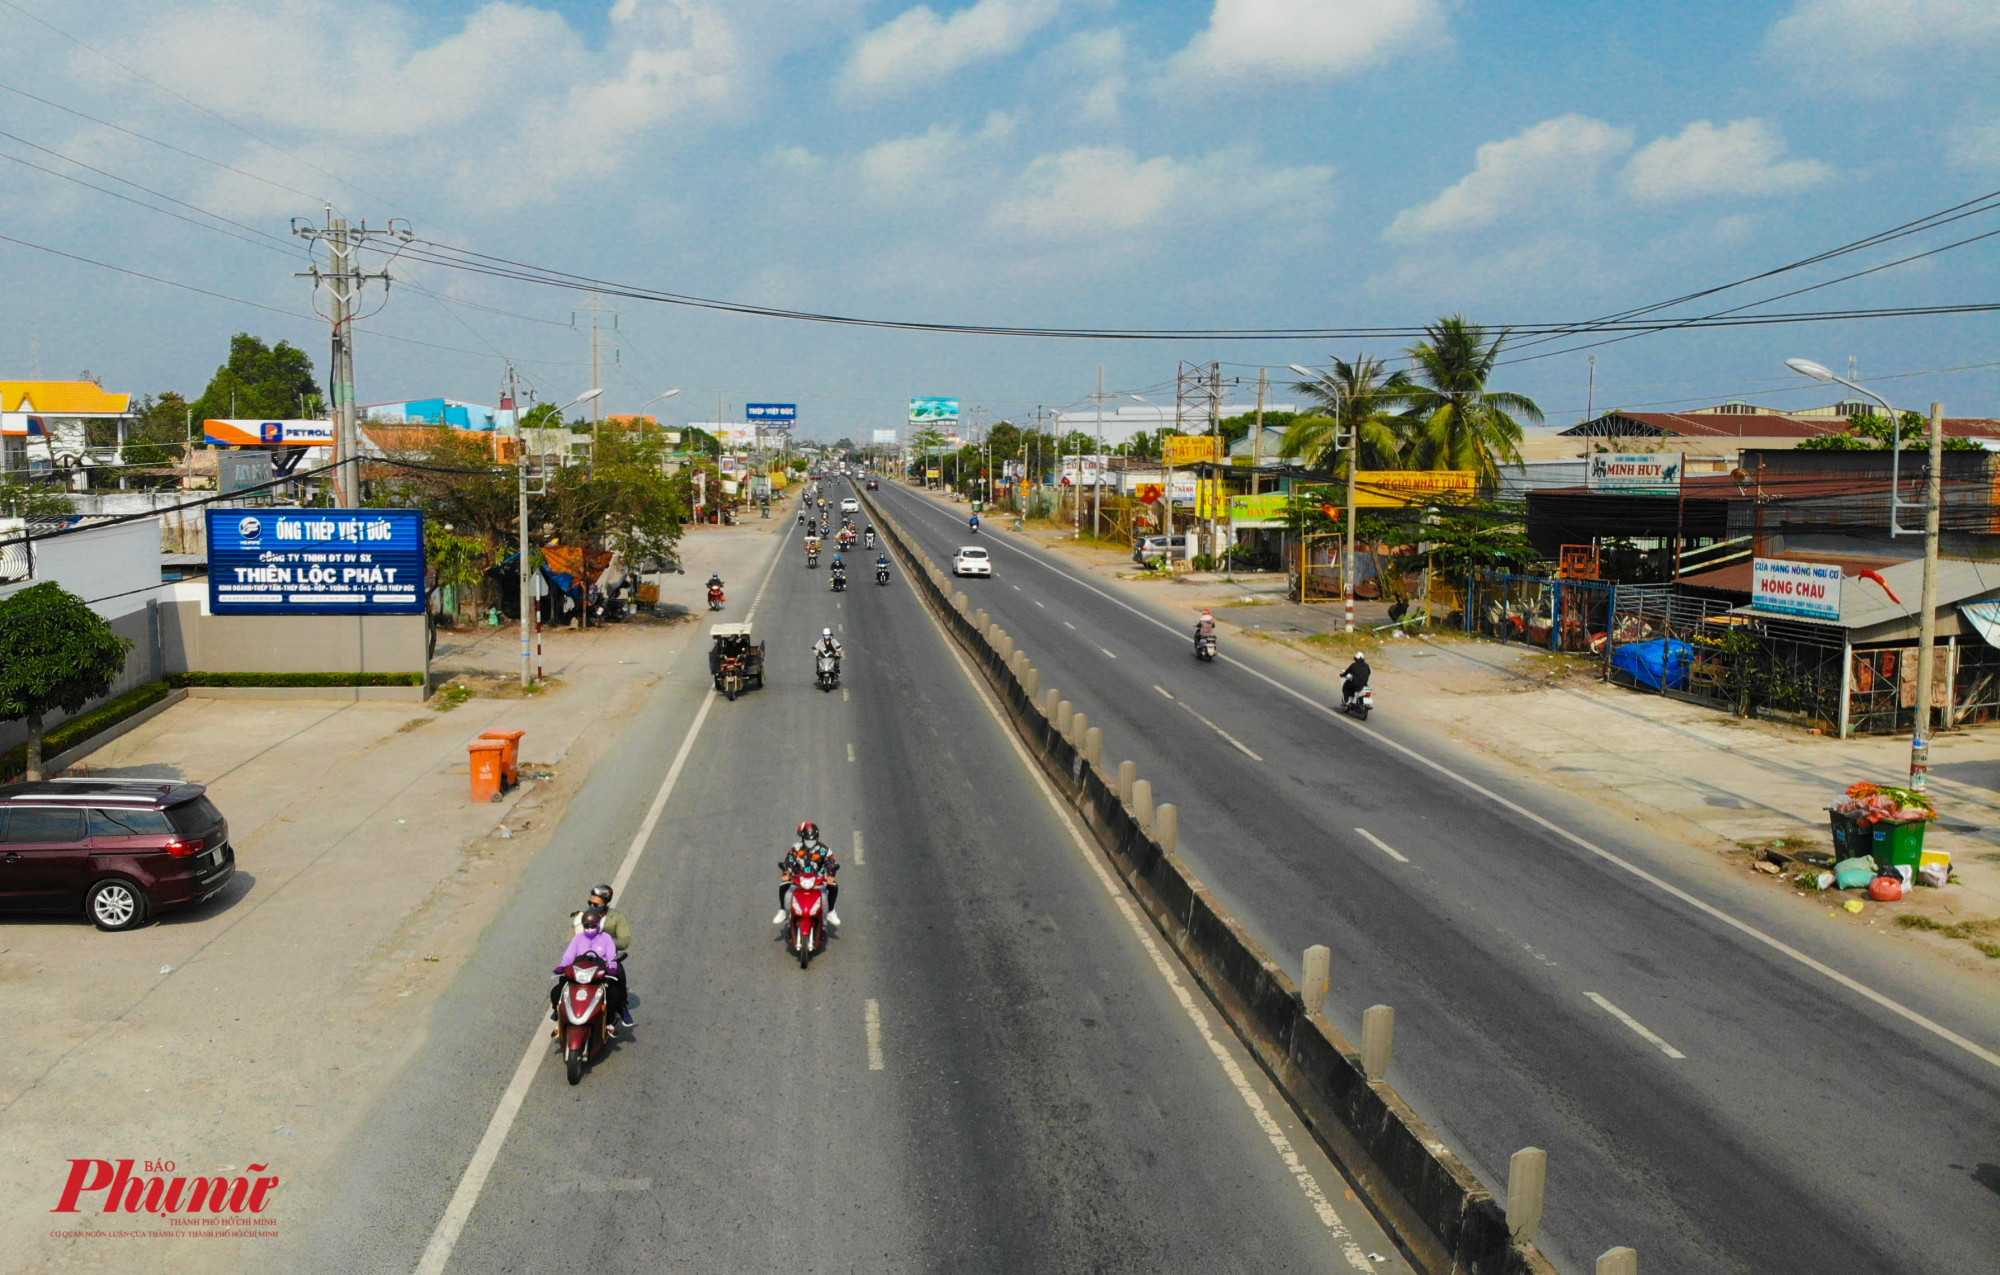 Quốc lộ 1A đoạn từ TPHCM về huyện Bến Lức (tỉnh Long An) rất thông thoáng cả 2 chiều